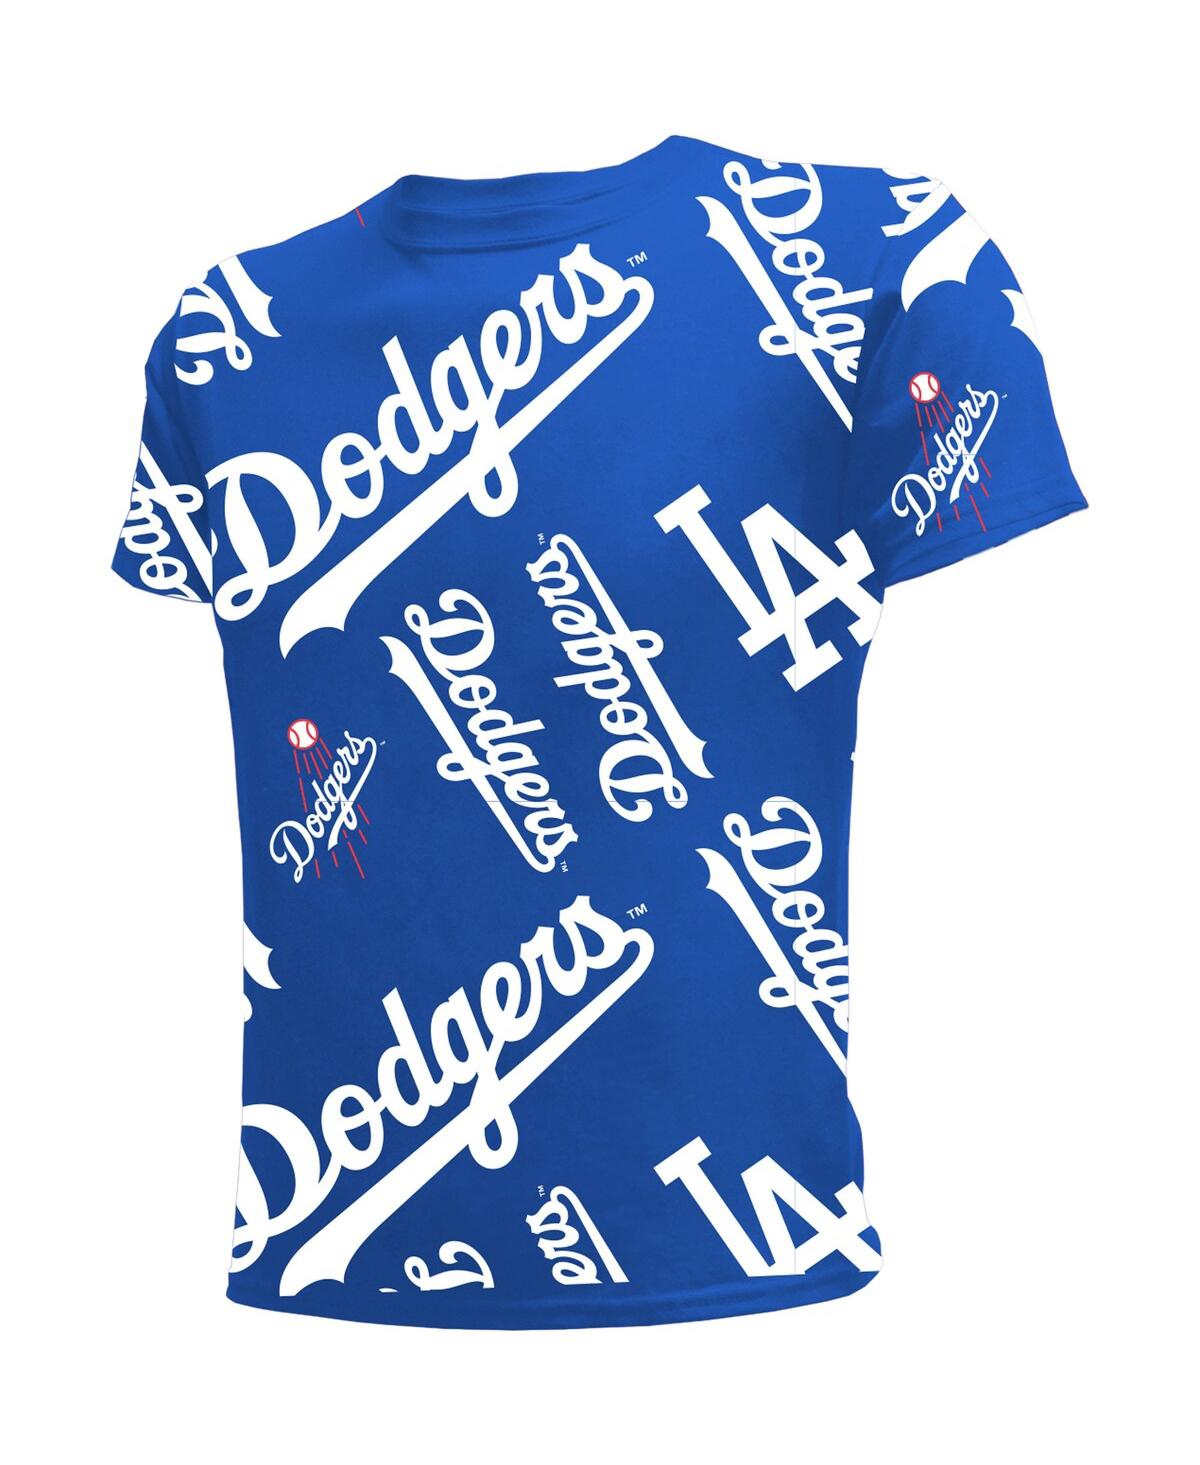 Dodgers LA Stitches Athletic Gear size L